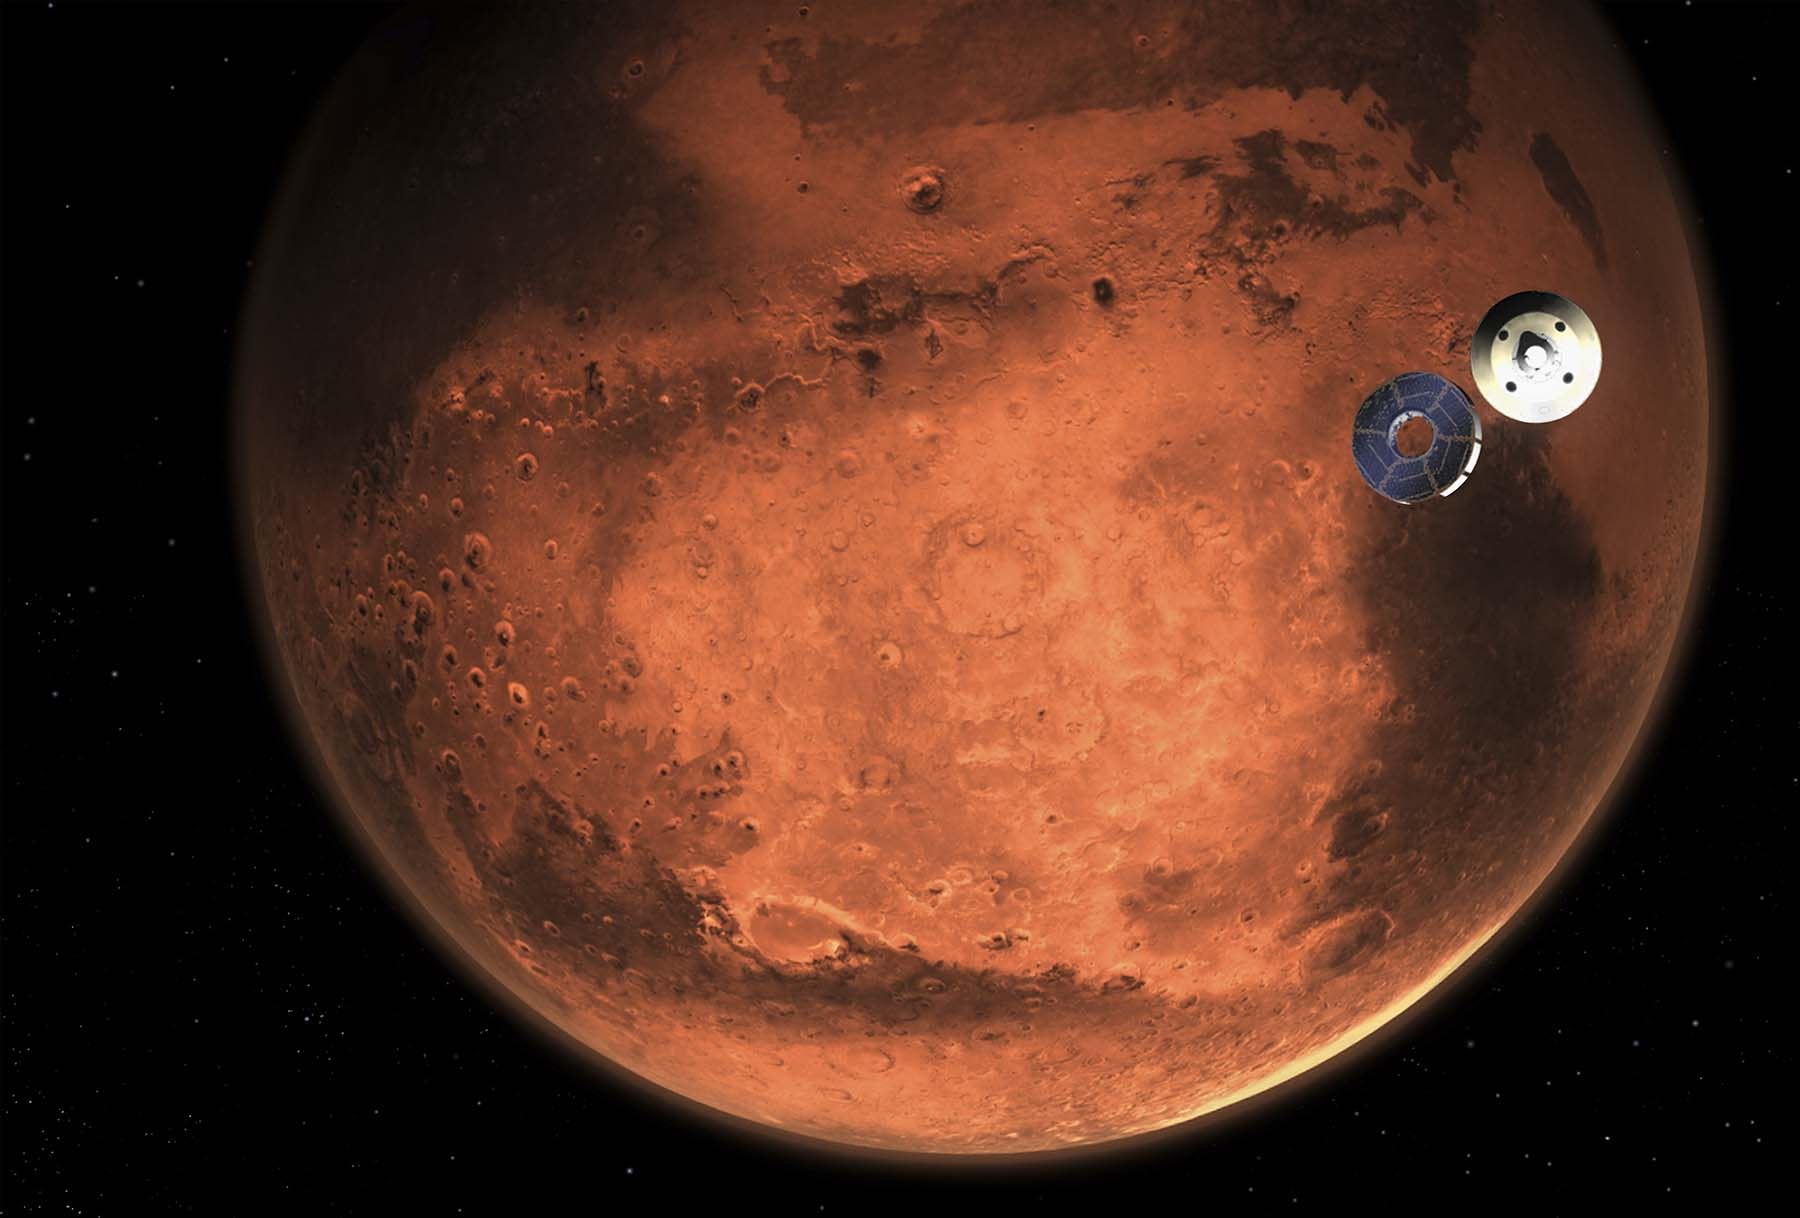 La serie de misiones, conocida como Crew Health and Performance Exploration Analog, incluye tres simulaciones de la superficie de Marte.Foto: AFP